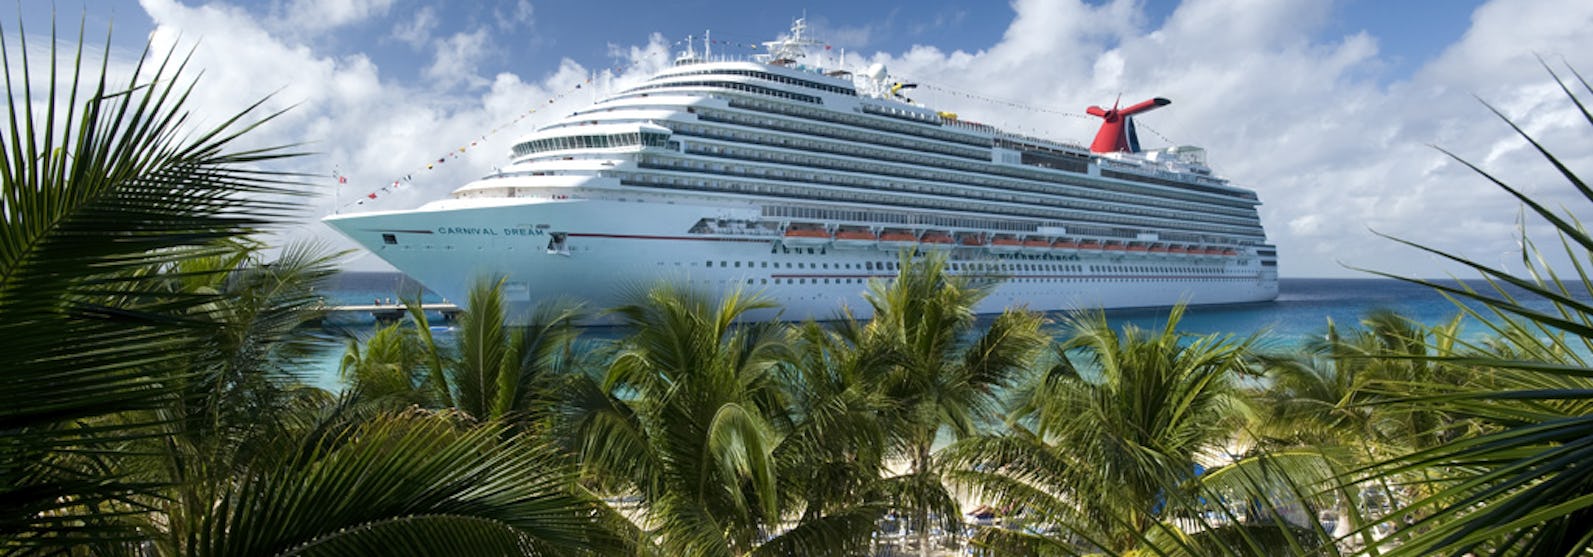 Bild på fartyget Carnival Dream. I förgrunden syns en sandstrand med solsängar och flera gröna palmer.